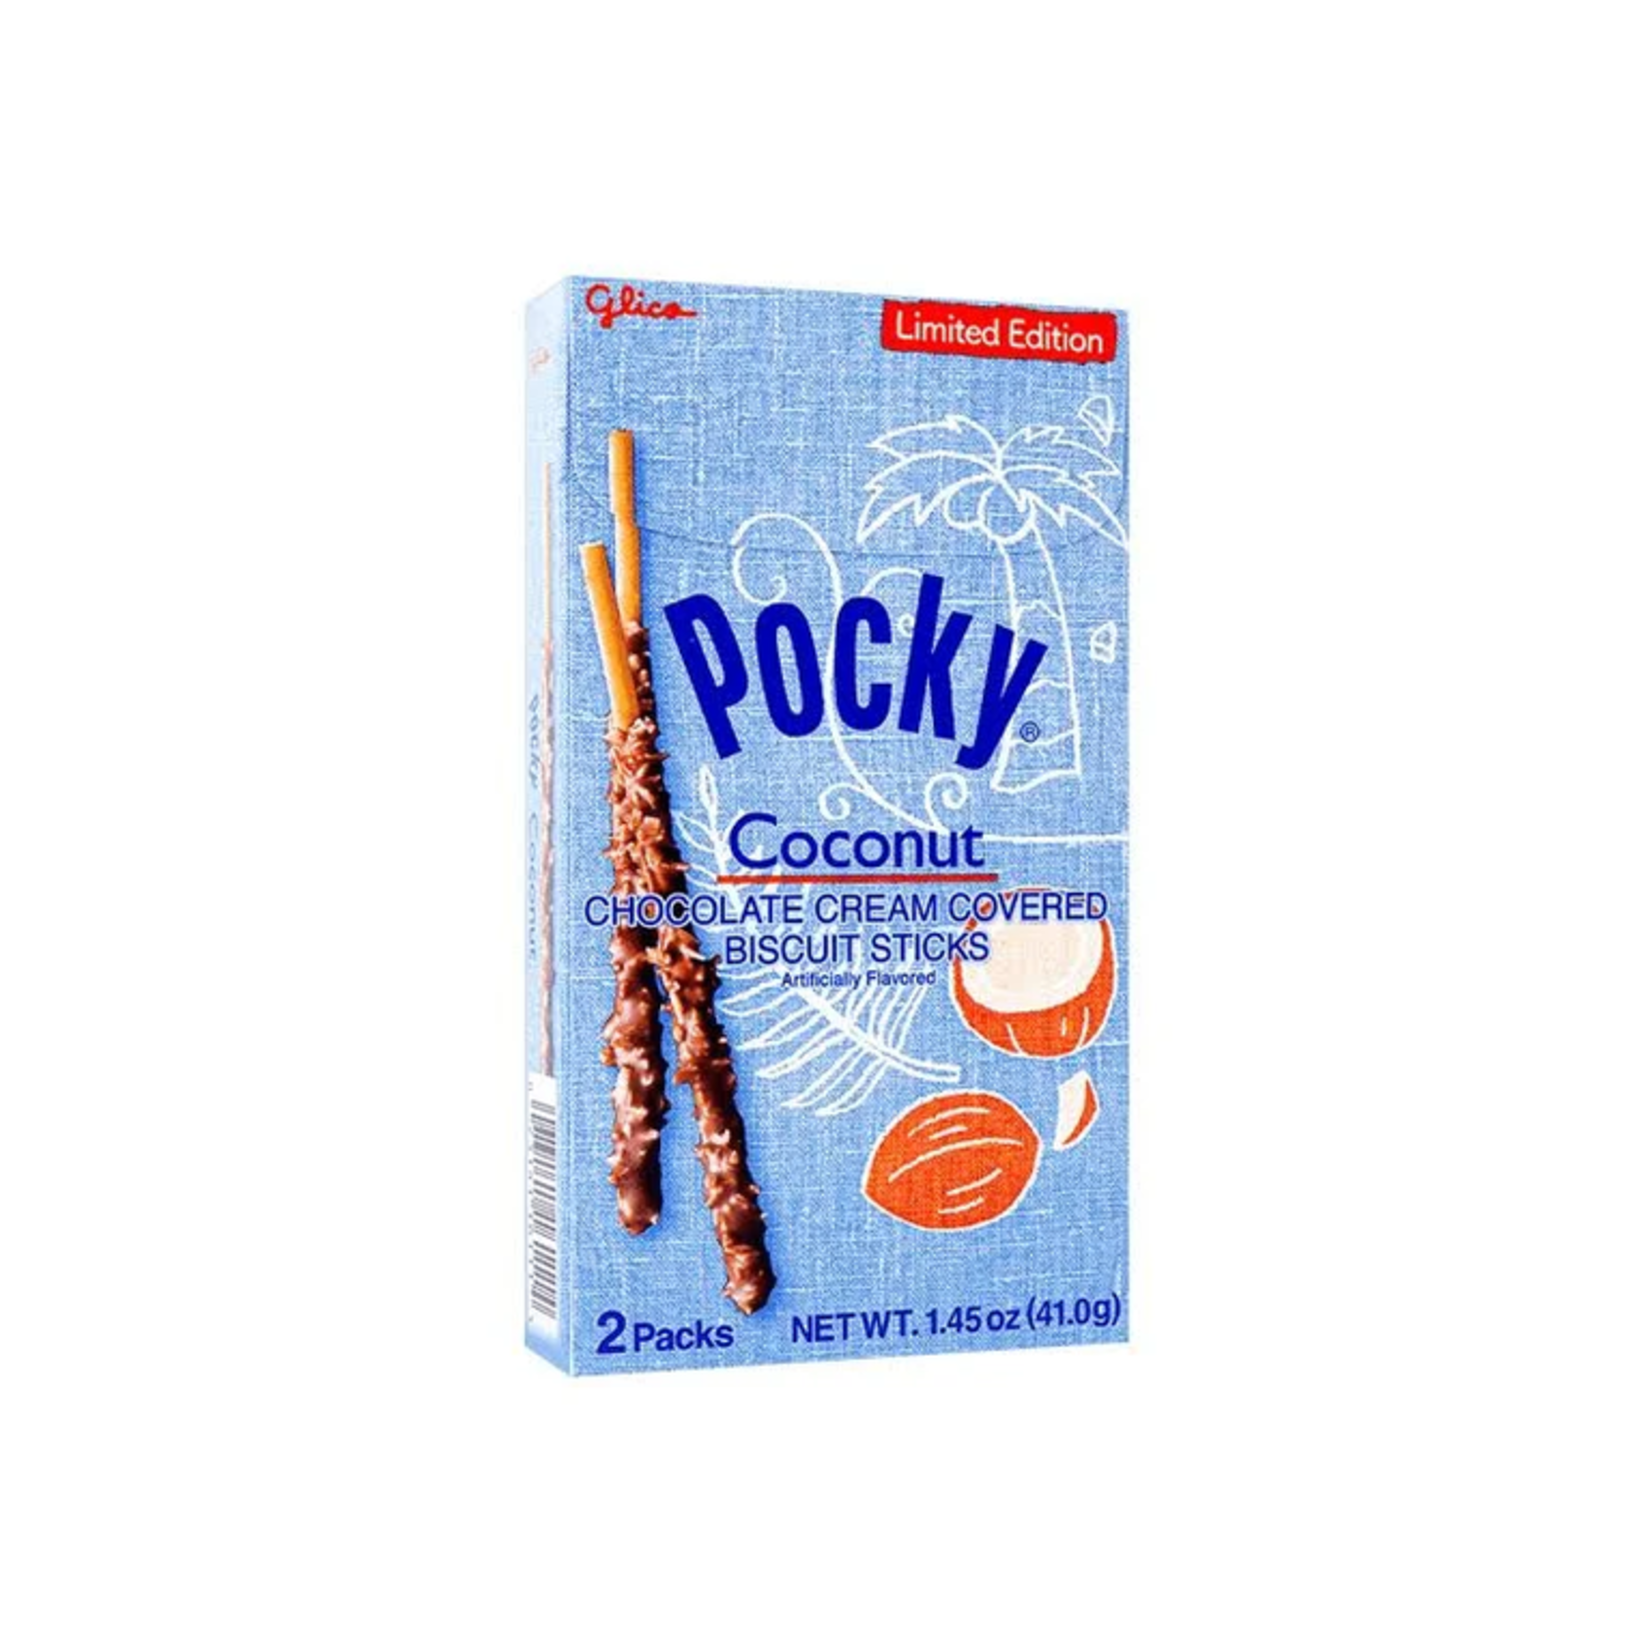 Glico Pocky - Coconut 1.45oz - Limited Edition